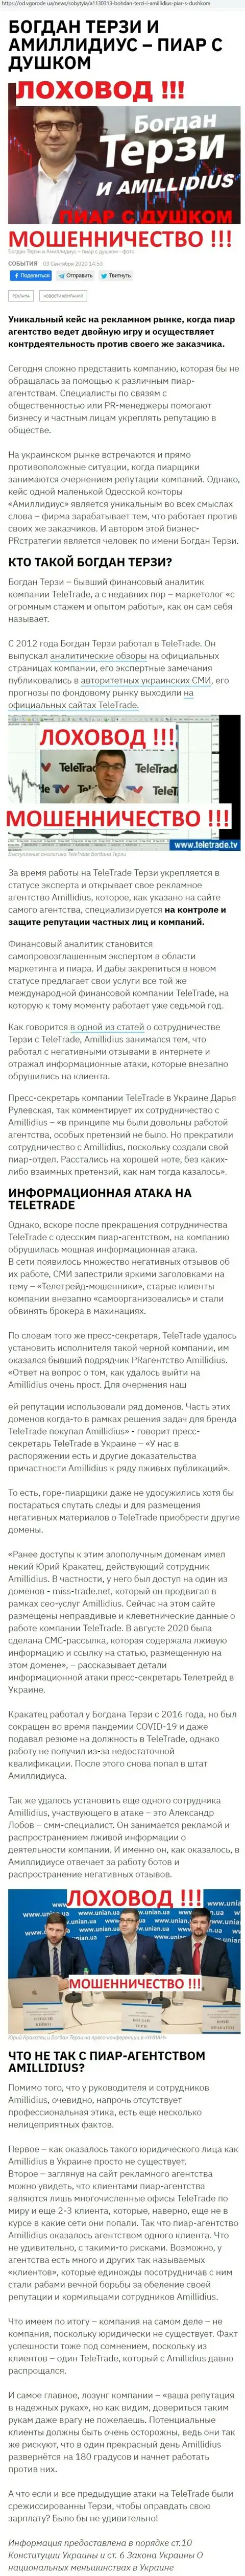 Терзи Богдан ненадежный партнёр, информация со слов уже бывшего работника компании Амиллидиус